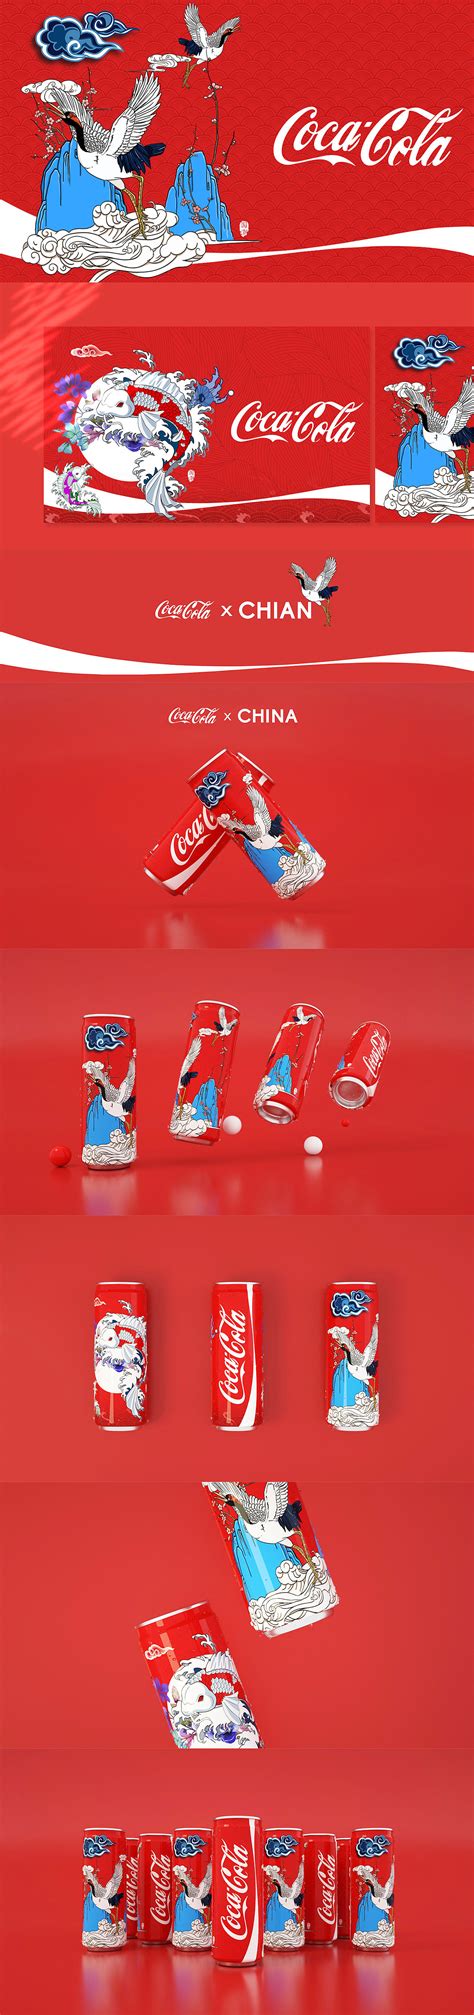 可口可乐公司2018开年营销承包你的春节!-秒火食品代理网